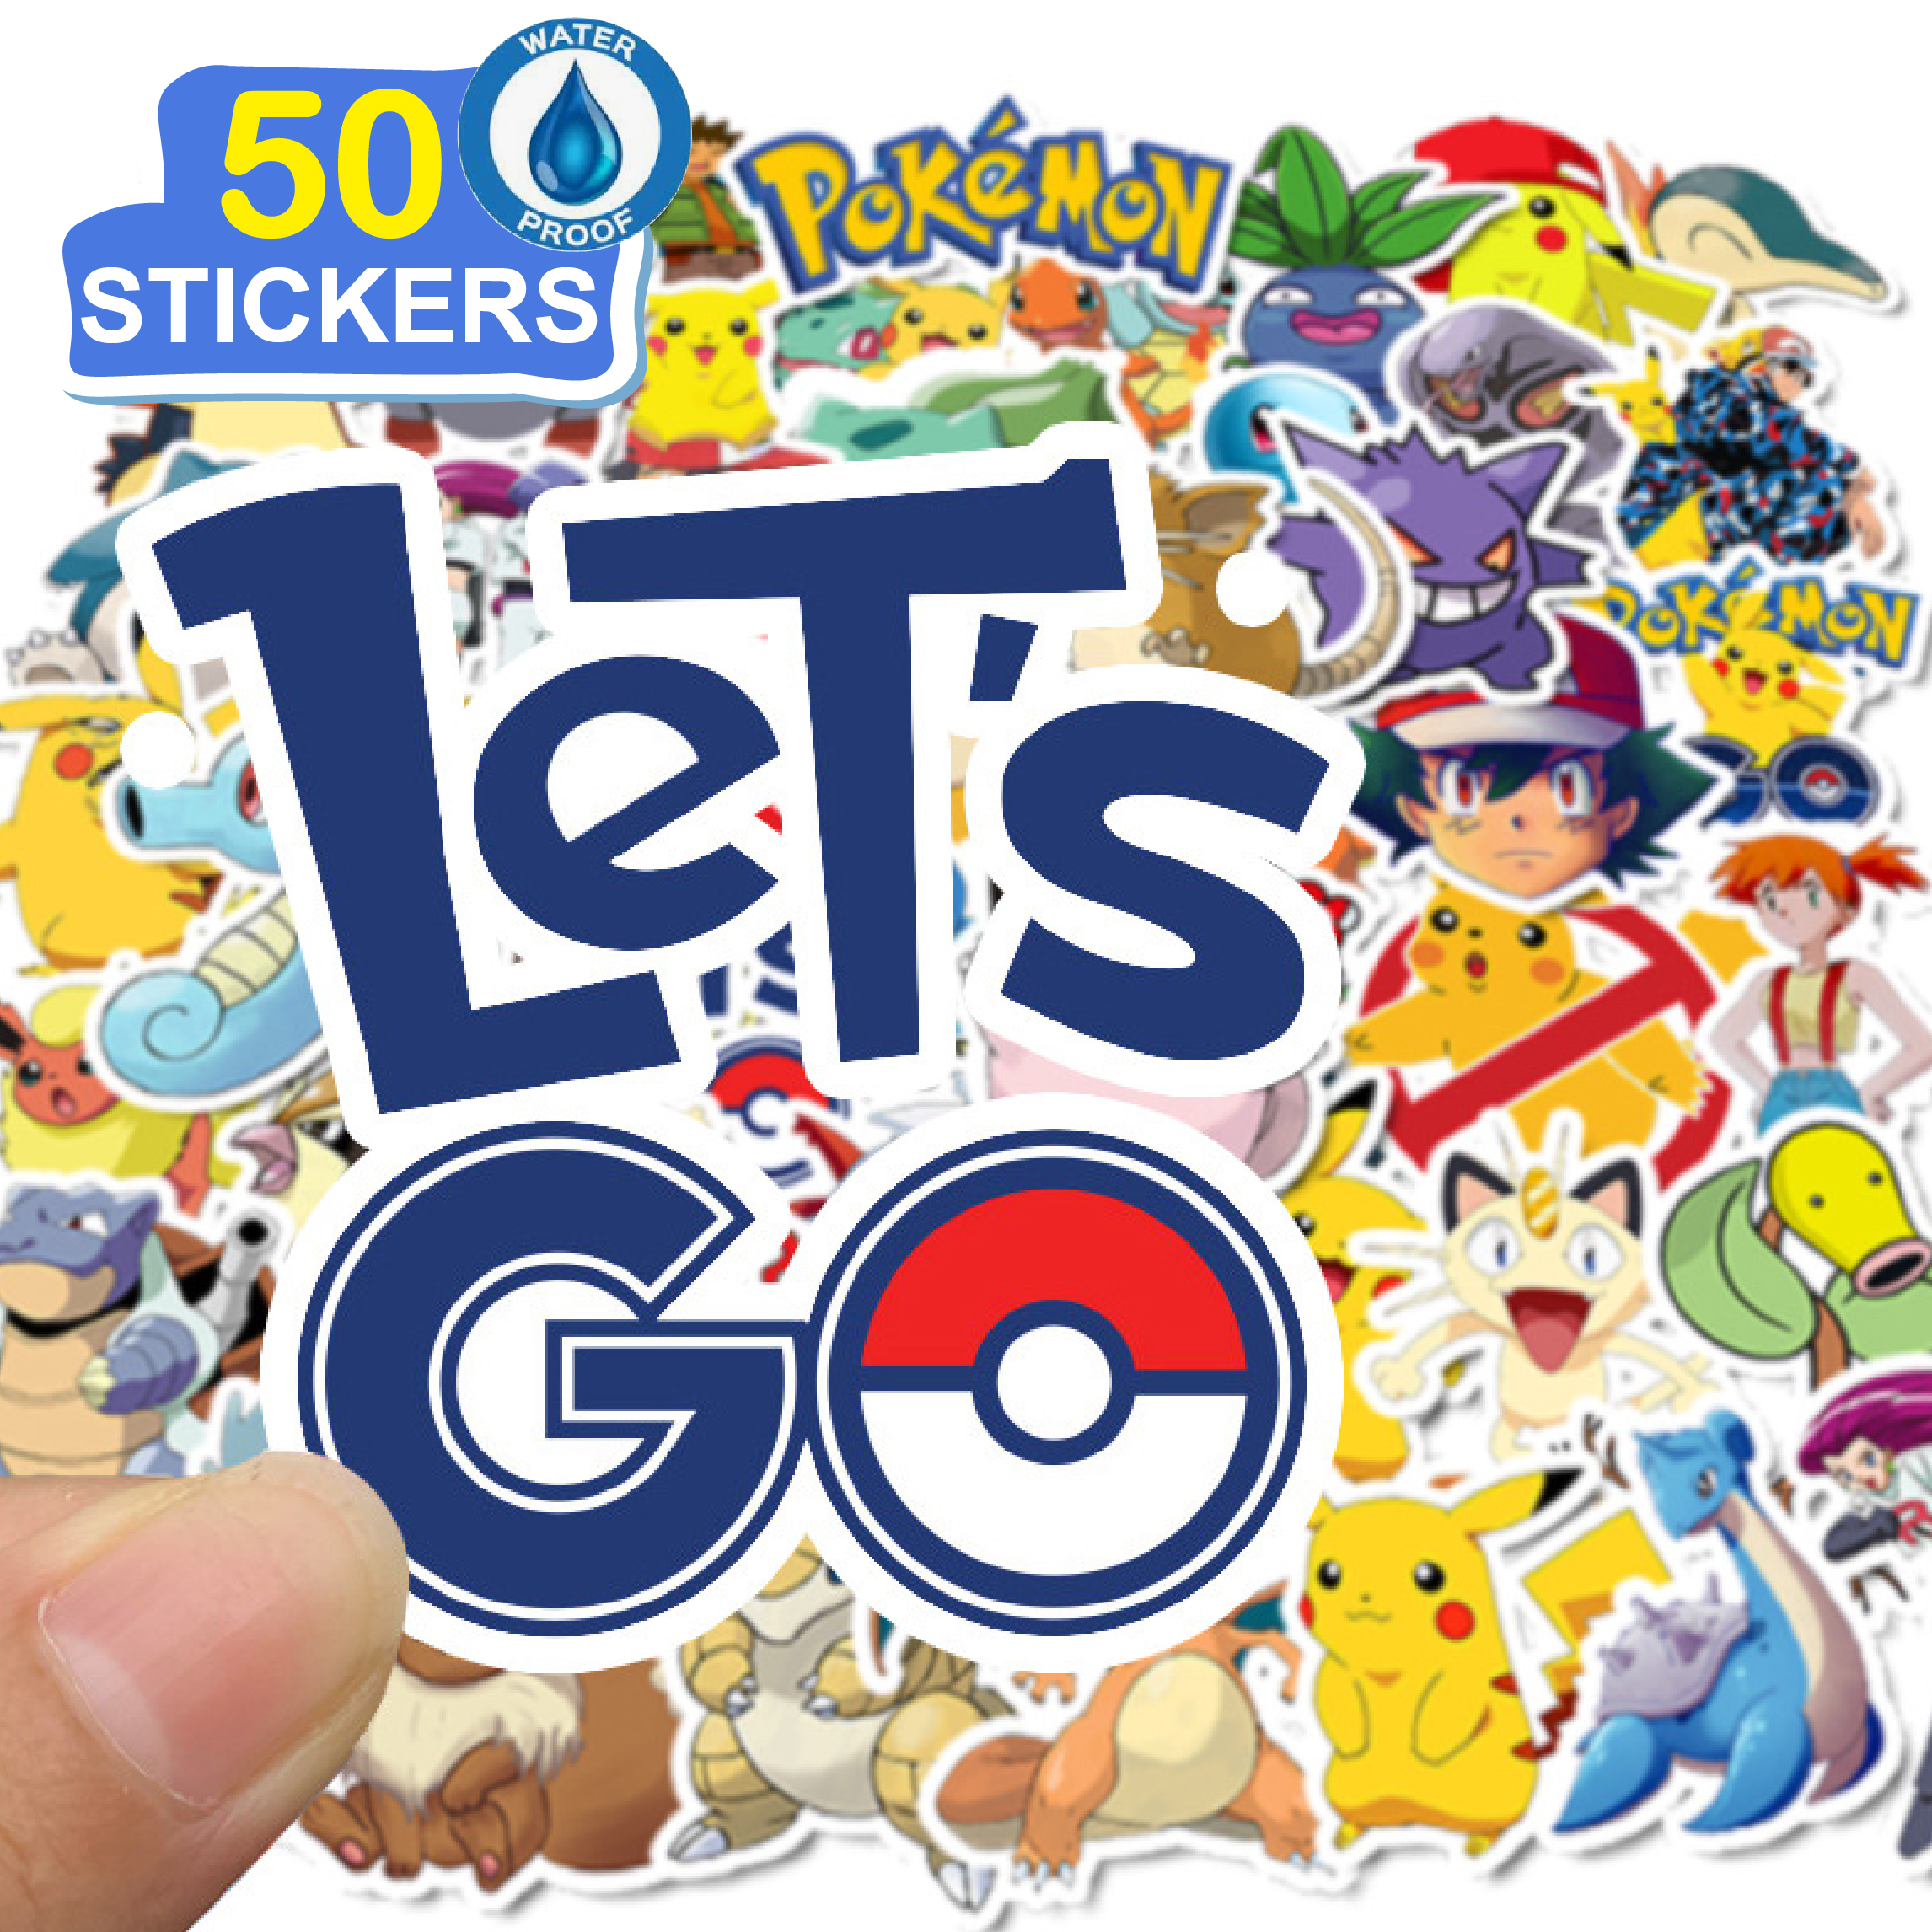 50 Stickers hoạt hình Pokemon hình dán dễ thương trang trí laptop, điện thoại, ipad, cốc nước, sổ tay, vali du lịch, scooter, ván trược - Chống thấm nước - FiDi